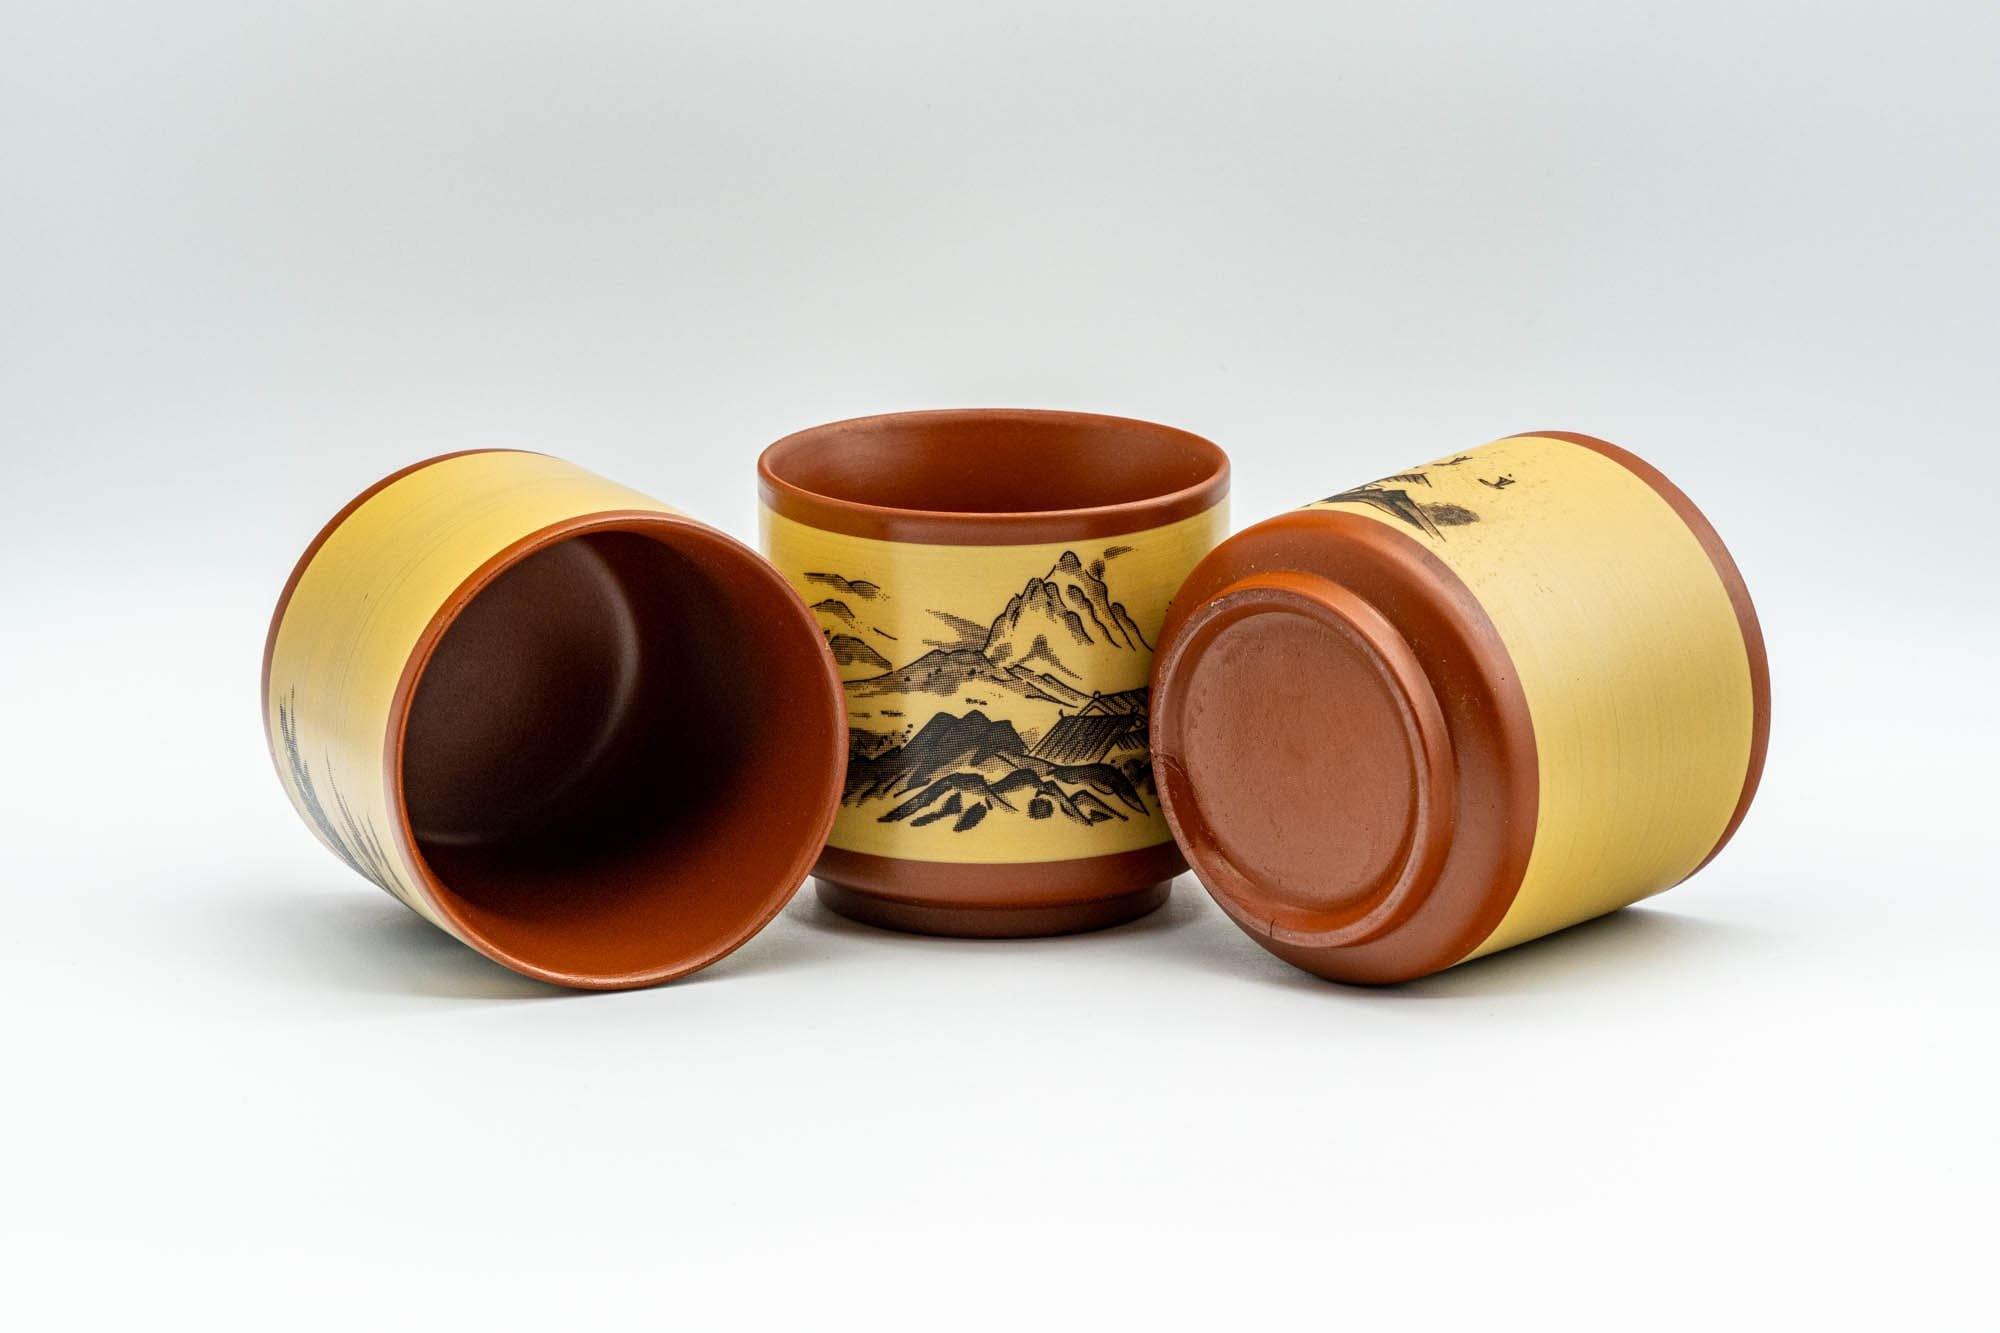 Japanese Tea Set - Mountainous Tokoname-yaki Debeso Kyusu with 3 Yunomi Teacups - Tezumi